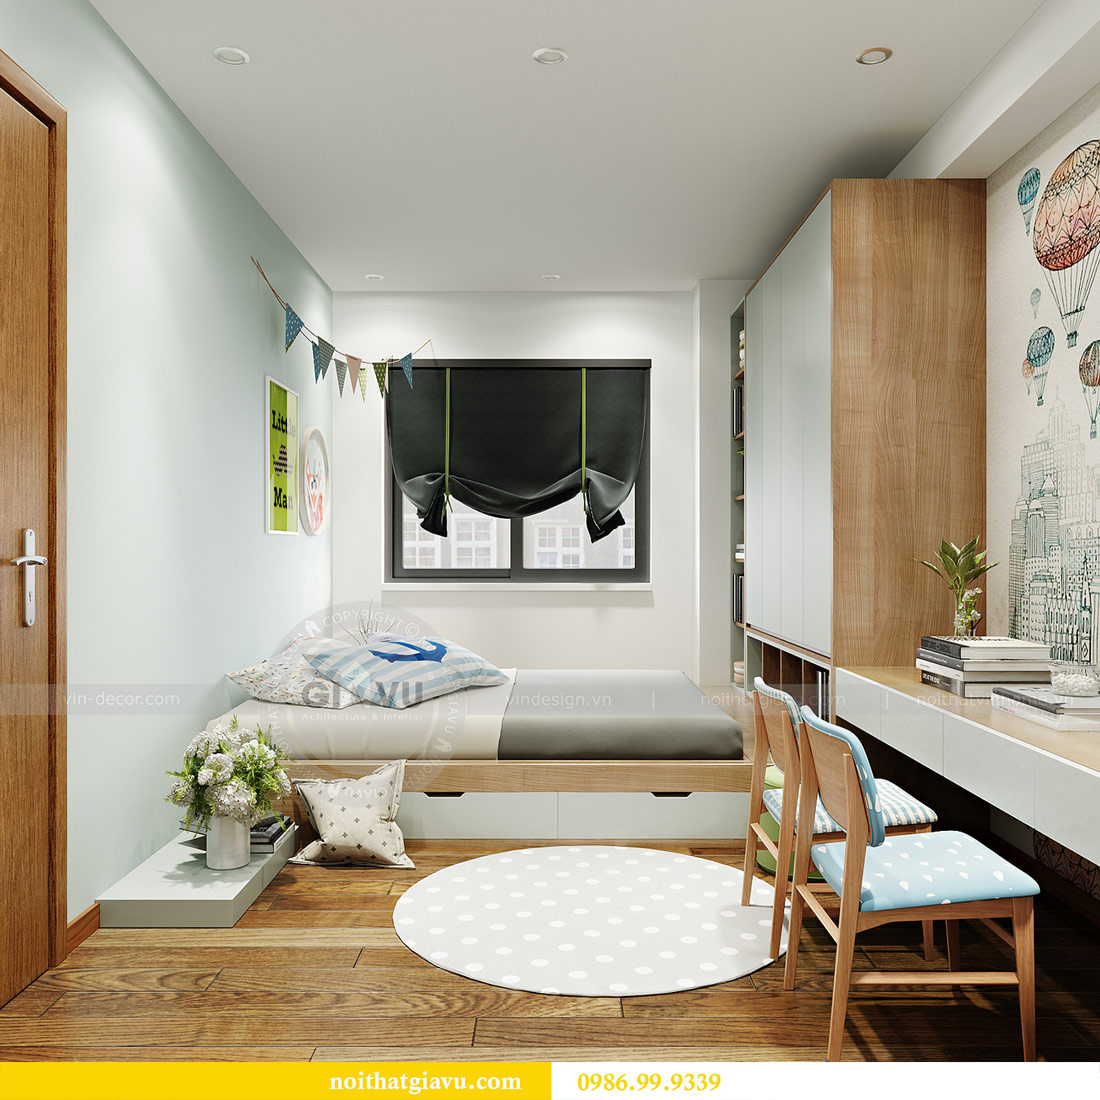 Mẫu thiết kế nội thất chung cư GREEN BAY MỄ TRÌ 7